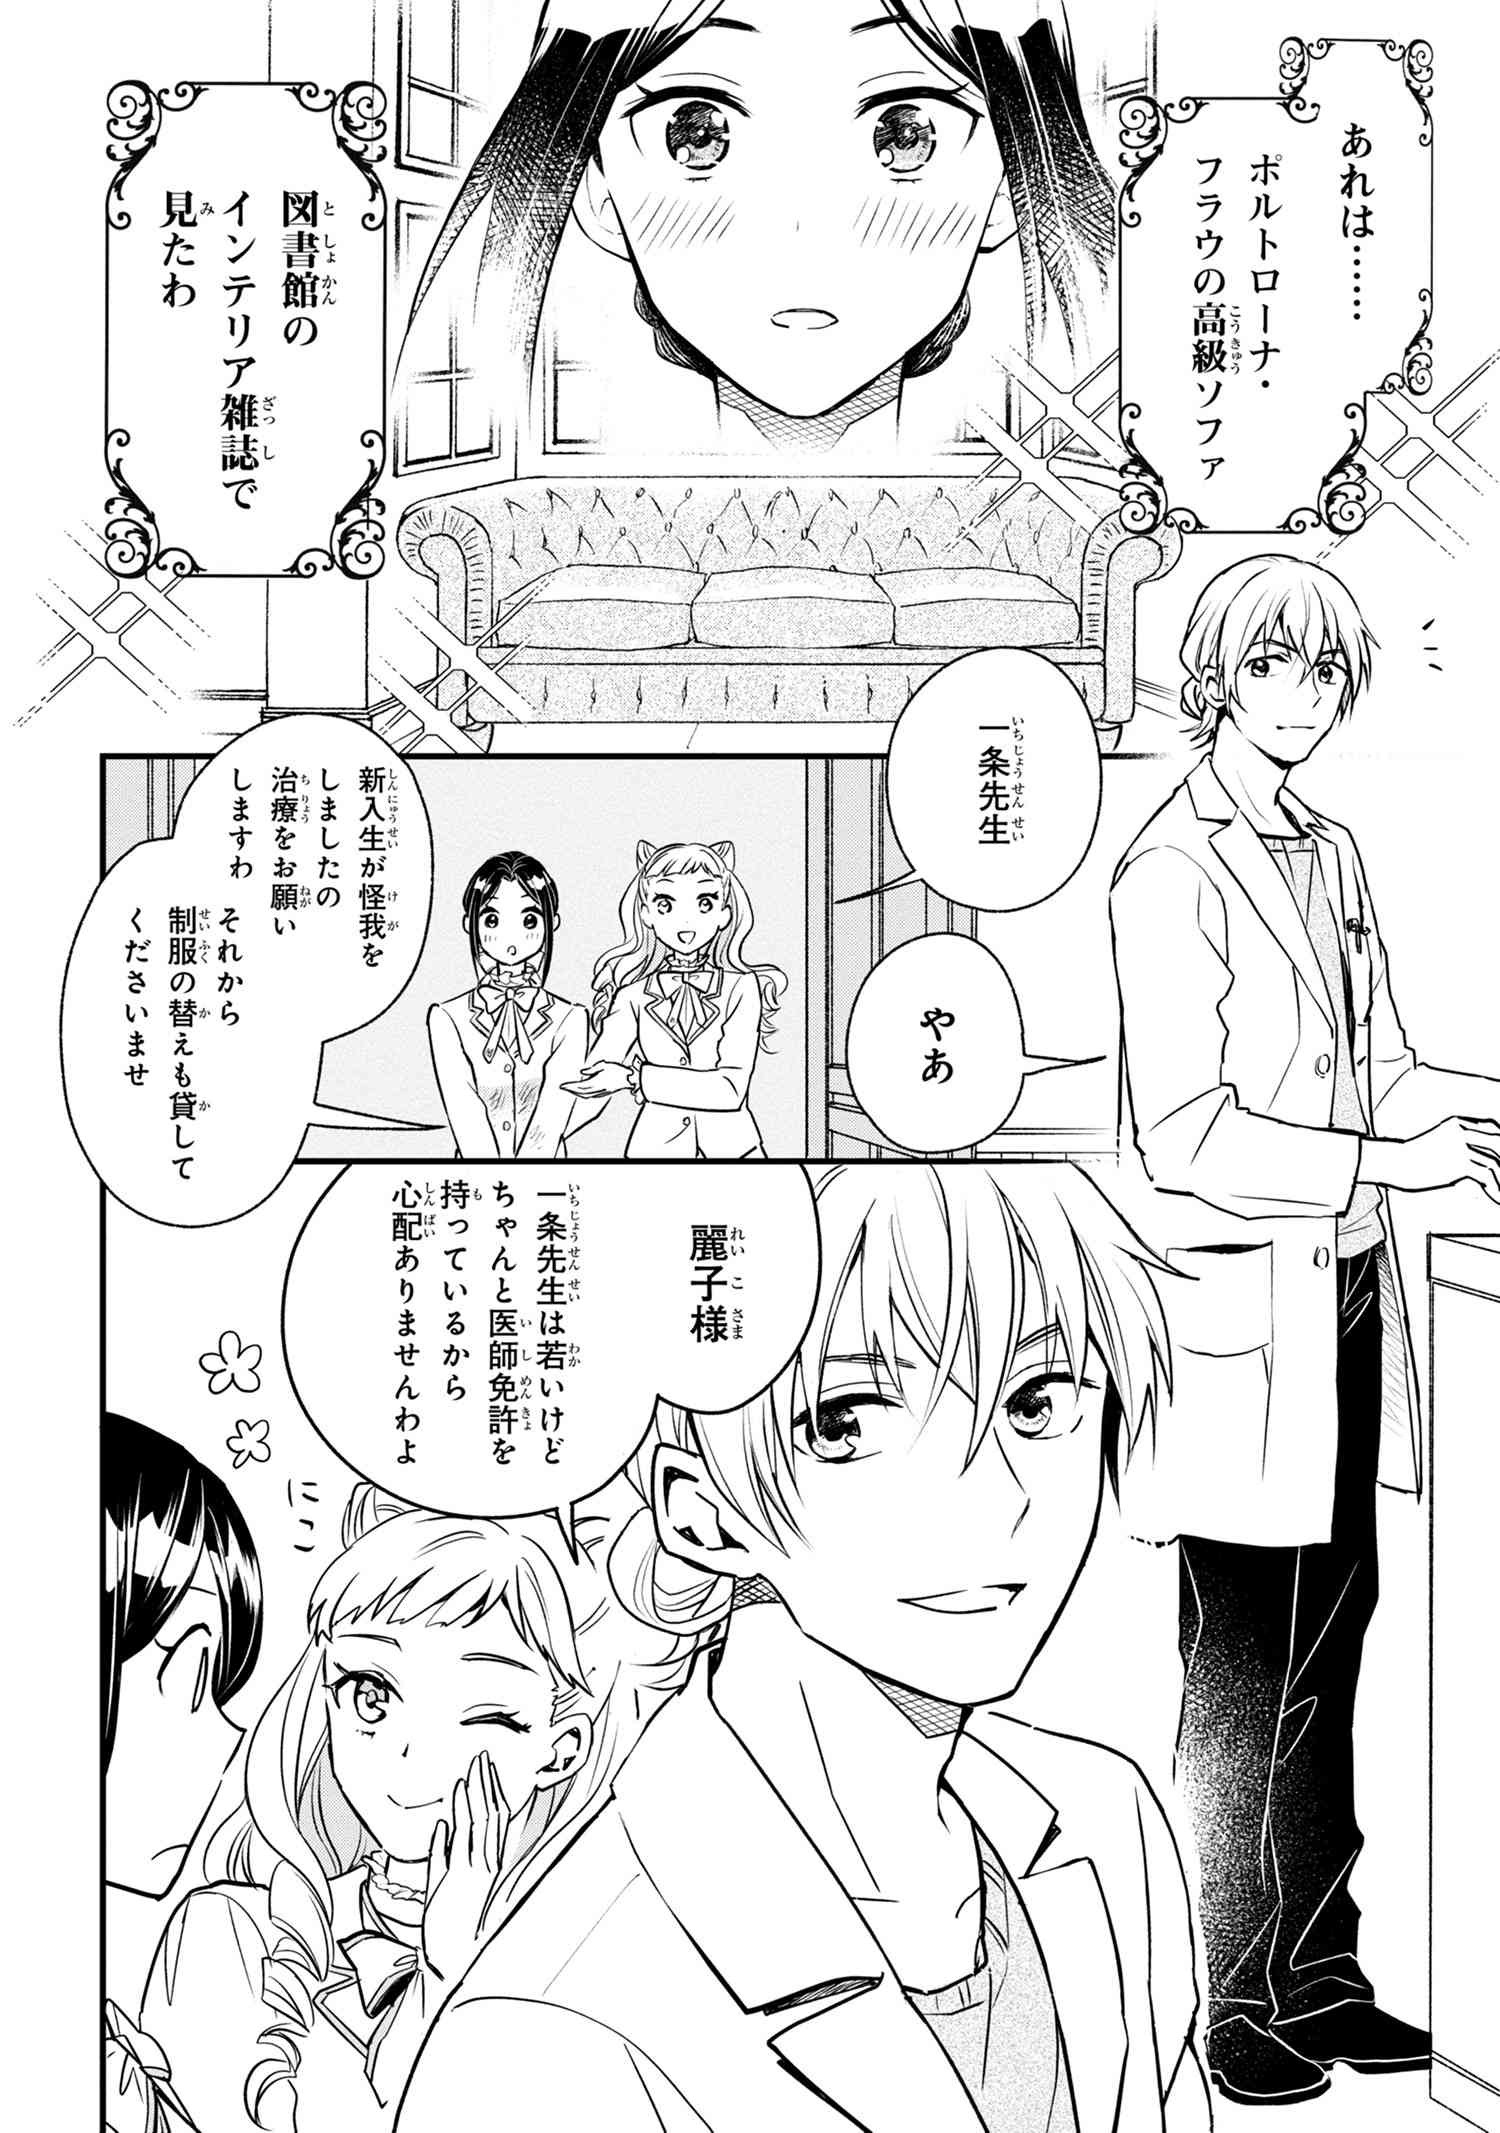 Reiko no Fuugi Akuyaku Reijou to Yobarete imasu ga, tada no Binbou Musume desu - Chapter 1-2 - Page 4